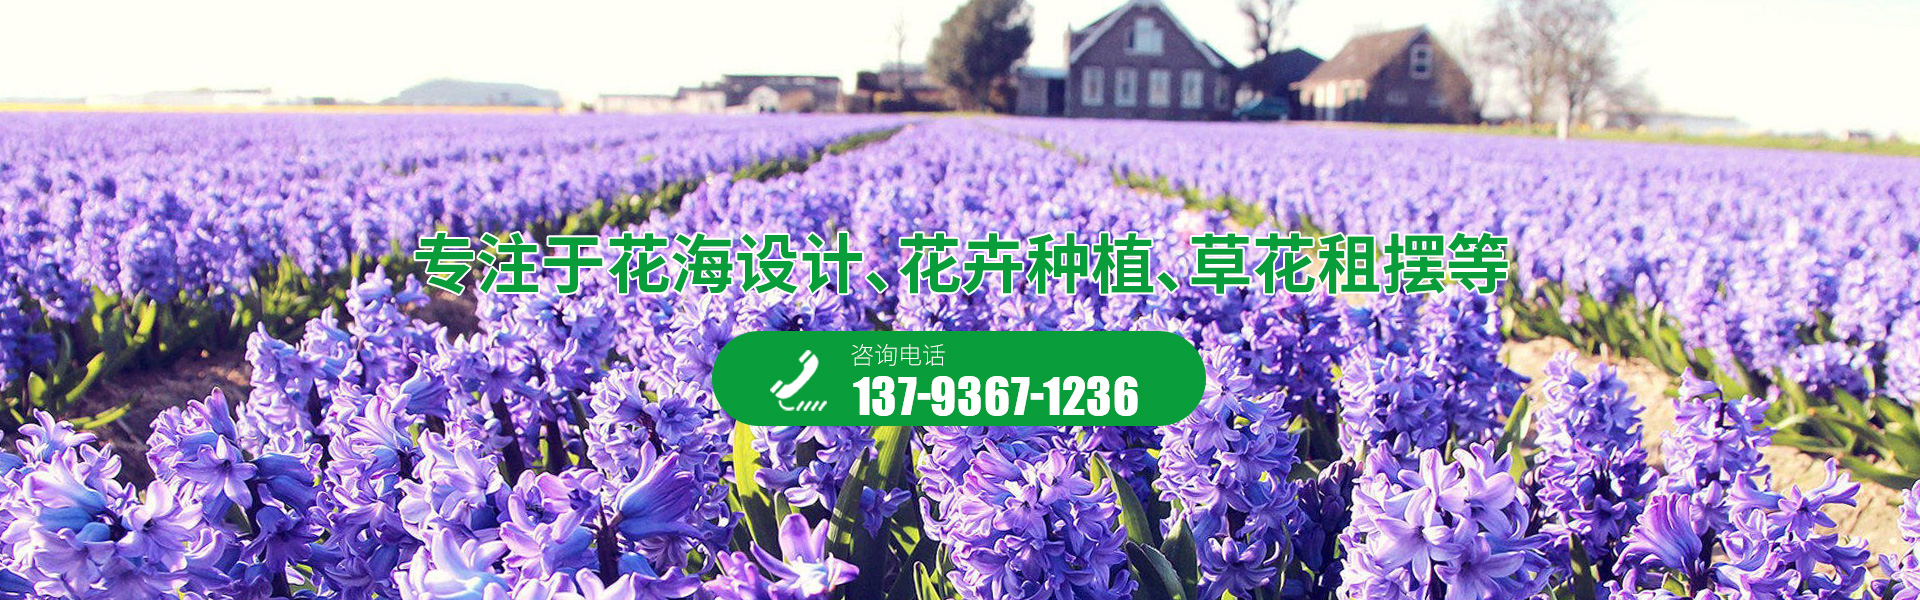 青州昌润园林绿化有限公司_青州绿化苗木,青州花卉工程,温室大棚承建